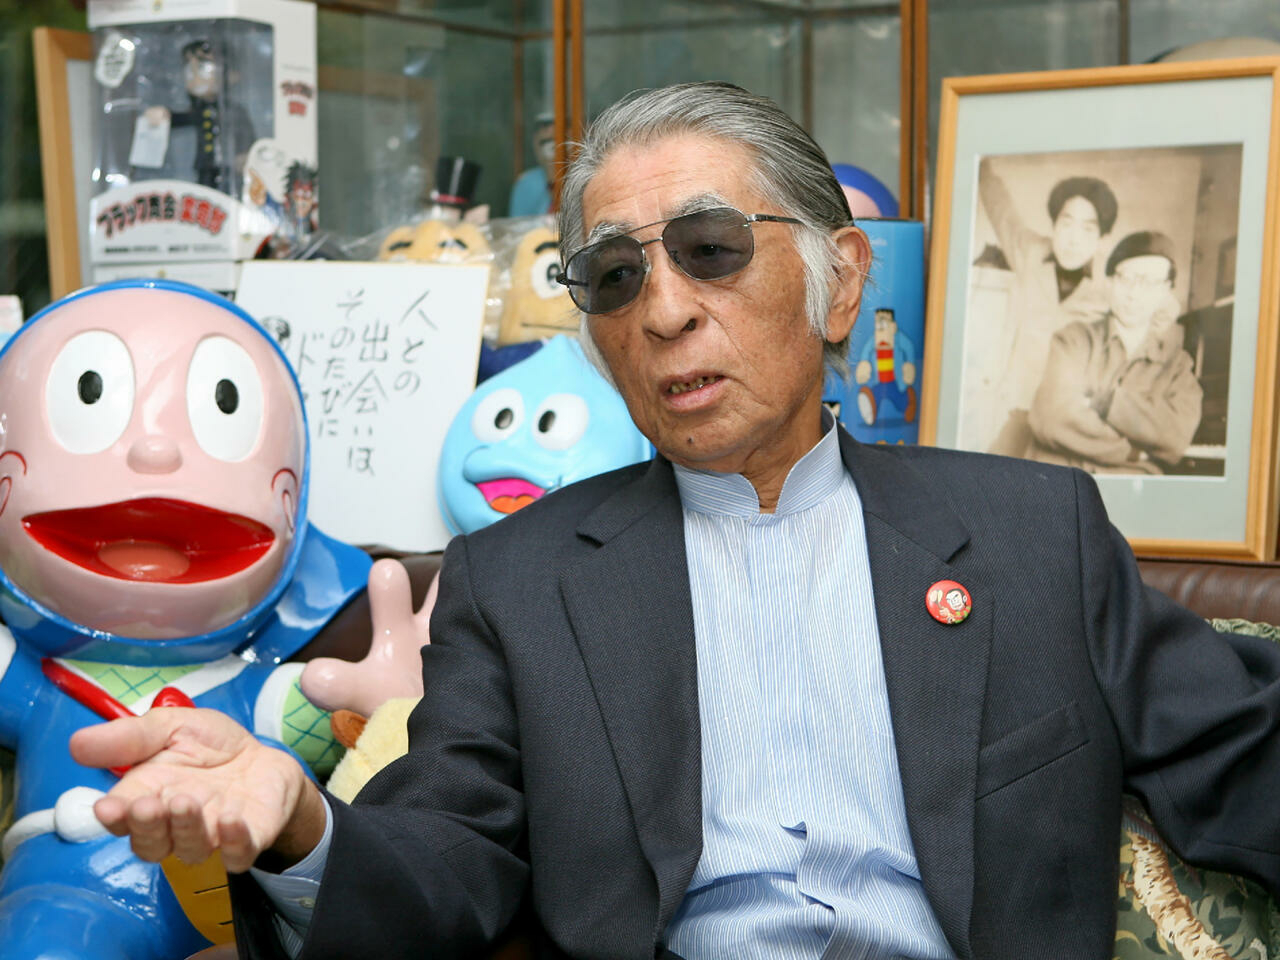 Fujiko Fujio A là một trong những tác giả manga nổi tiếng của Nhật Bản với tác phẩm nổi tiếng Doraemon. Hãy cùng chiêm ngưỡng hình ảnh về ông và tìm hiểu thêm về đời sống và sự nghiệp của một nhà văn vĩ đại trong lịch sử văn hóa Nhật Bản!